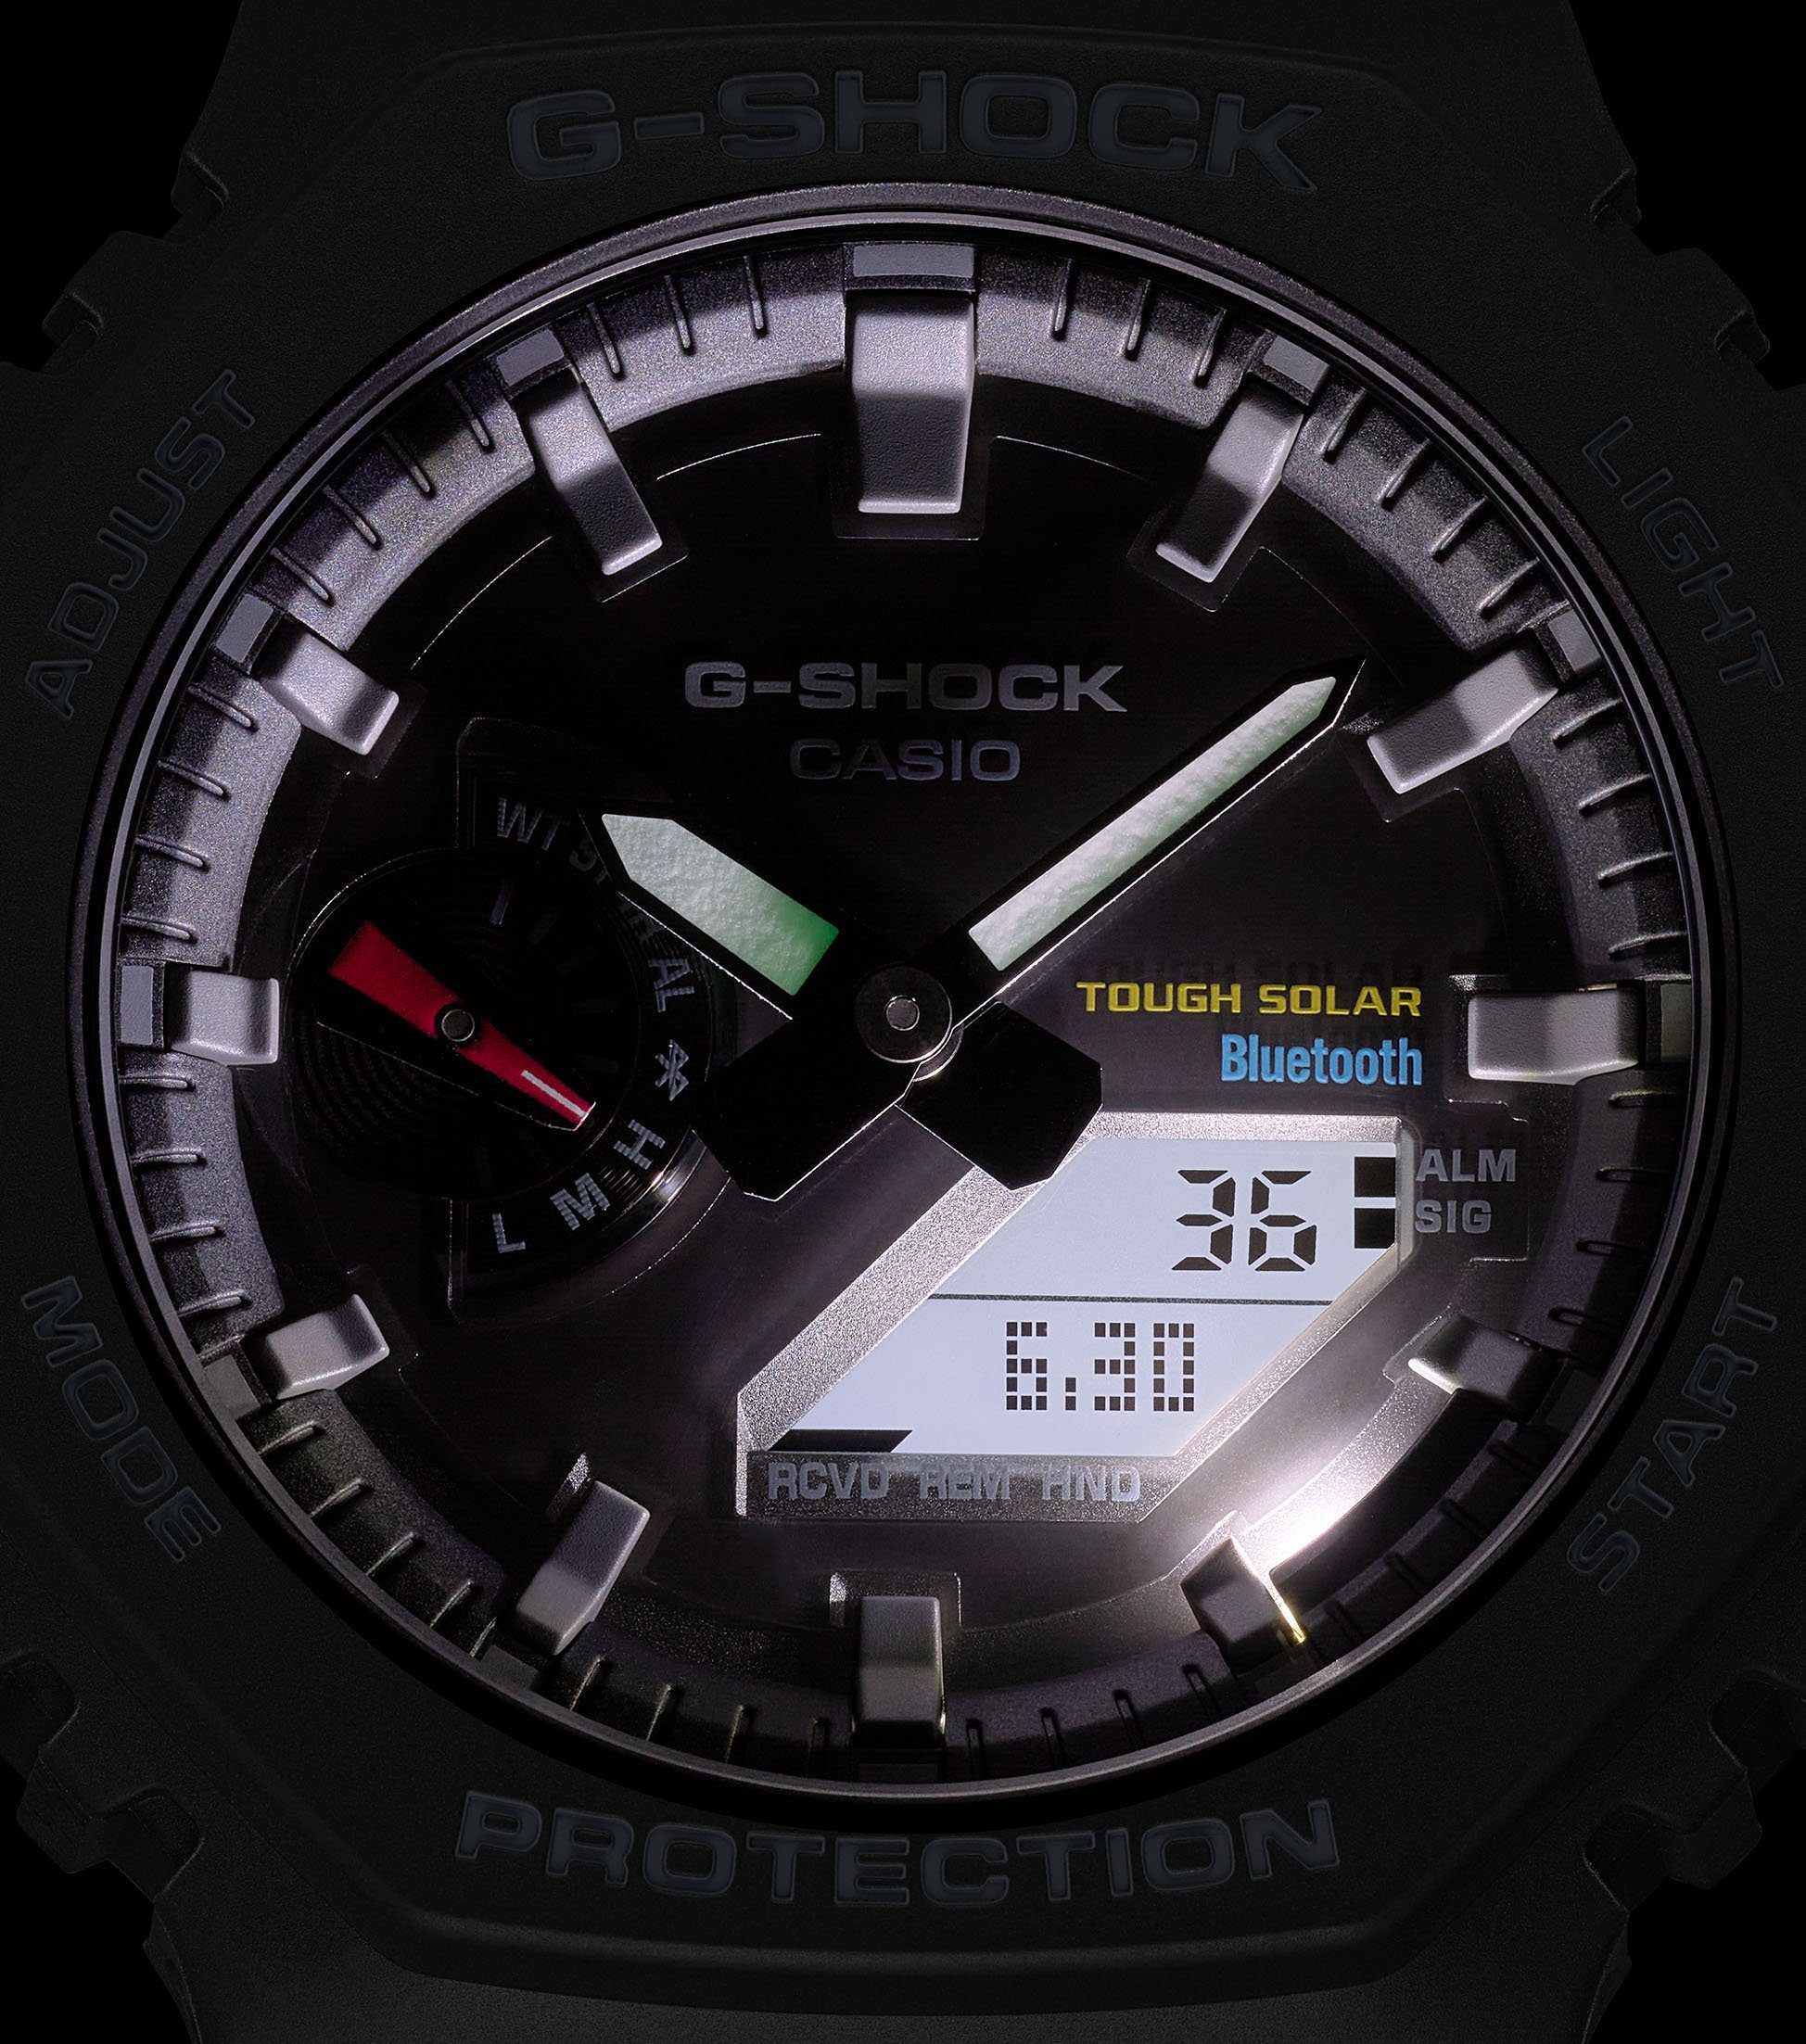 GA-B2100-1AER Solar CASIO G-SHOCK Smartwatch,